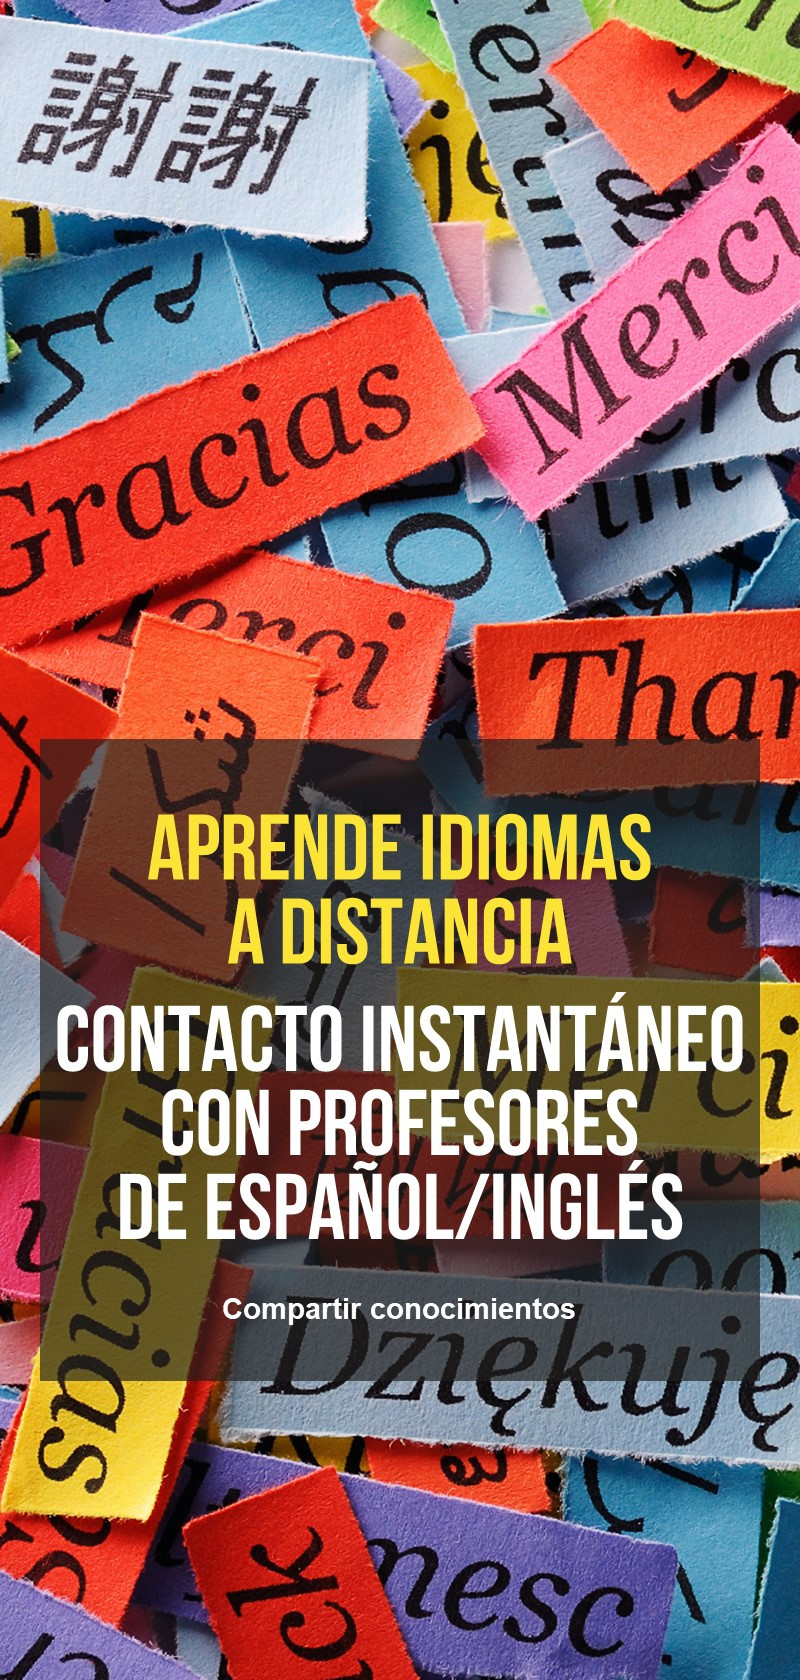 Practicar la conversación en español online